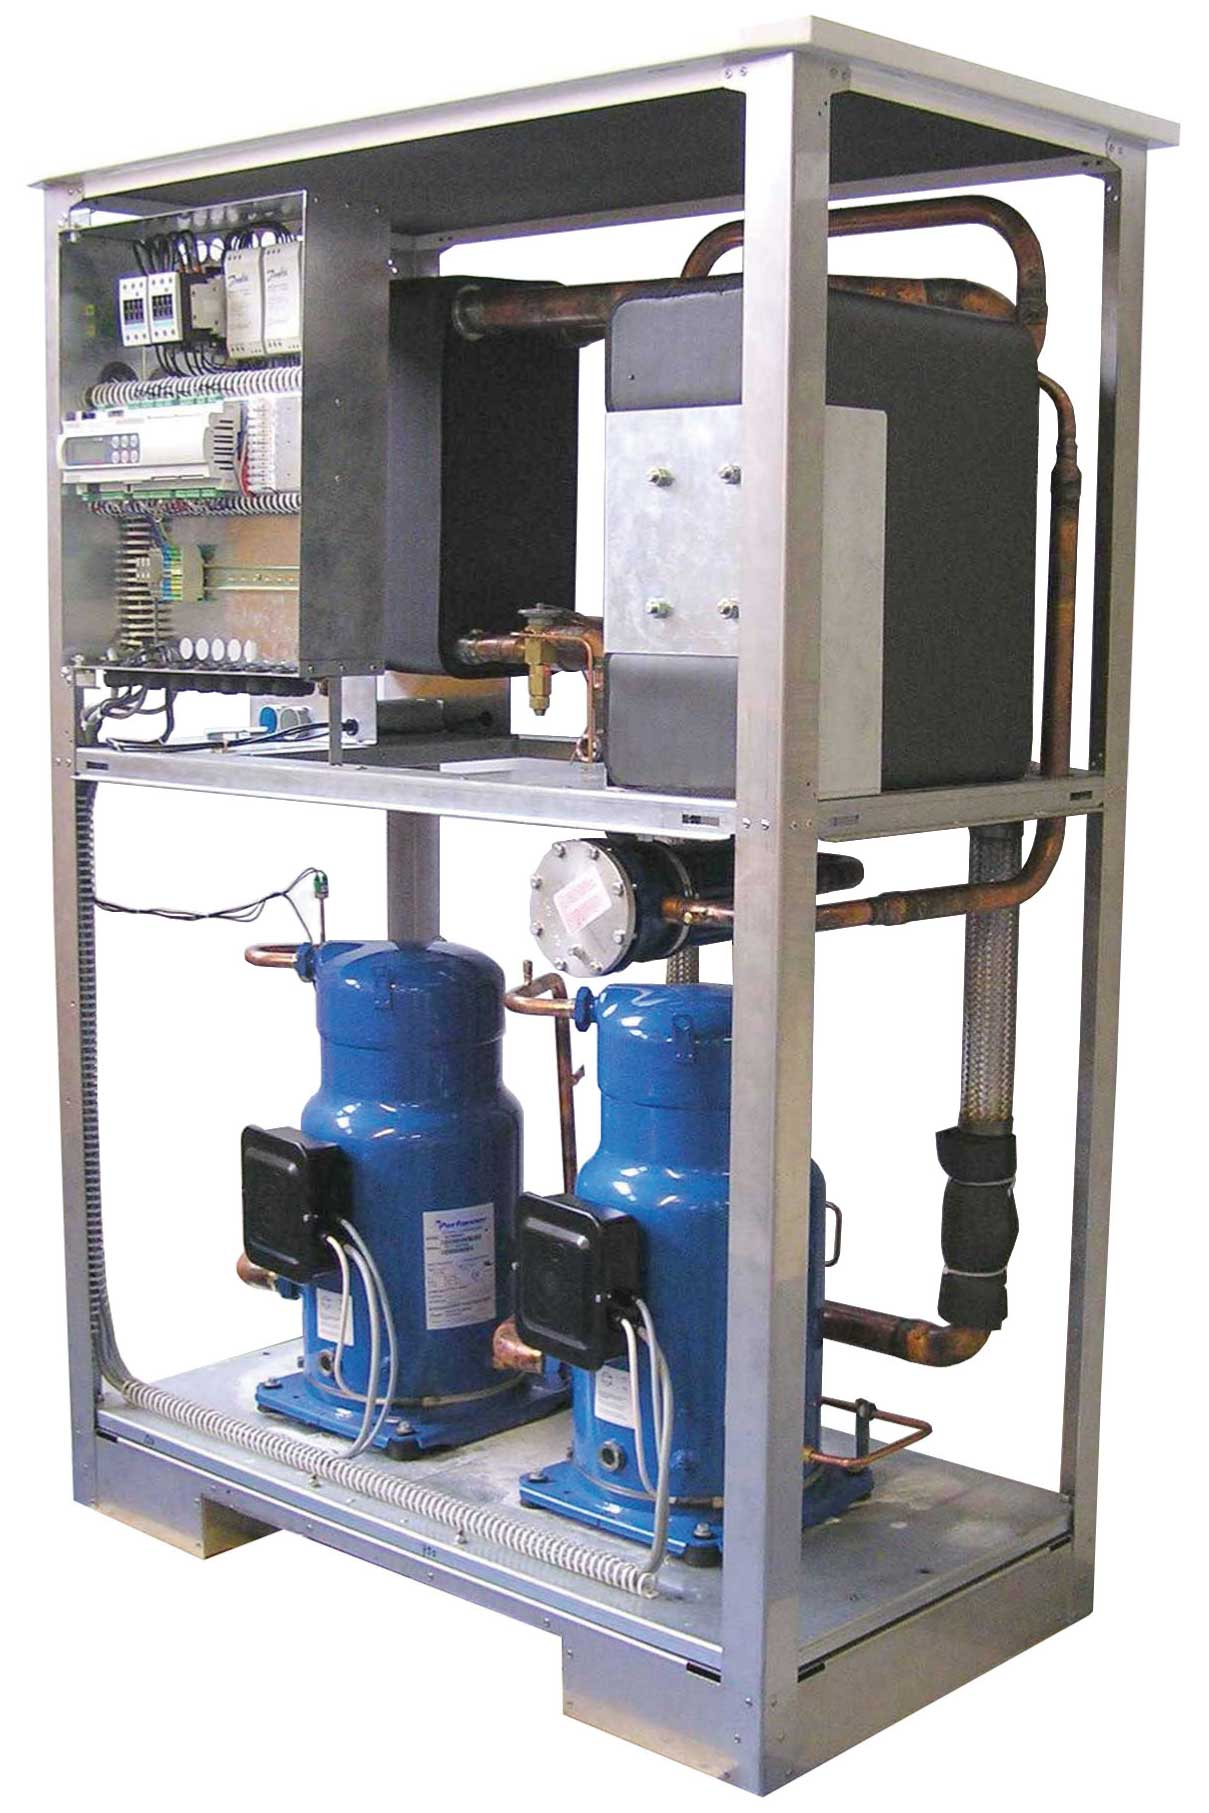 4.1 2 Varmepumpens anvendelsformål 2.1 Anvendelsesområde Brine/vand-varmepumpen er udelukkende beregnet til opvarmning af opvarmningsvand.